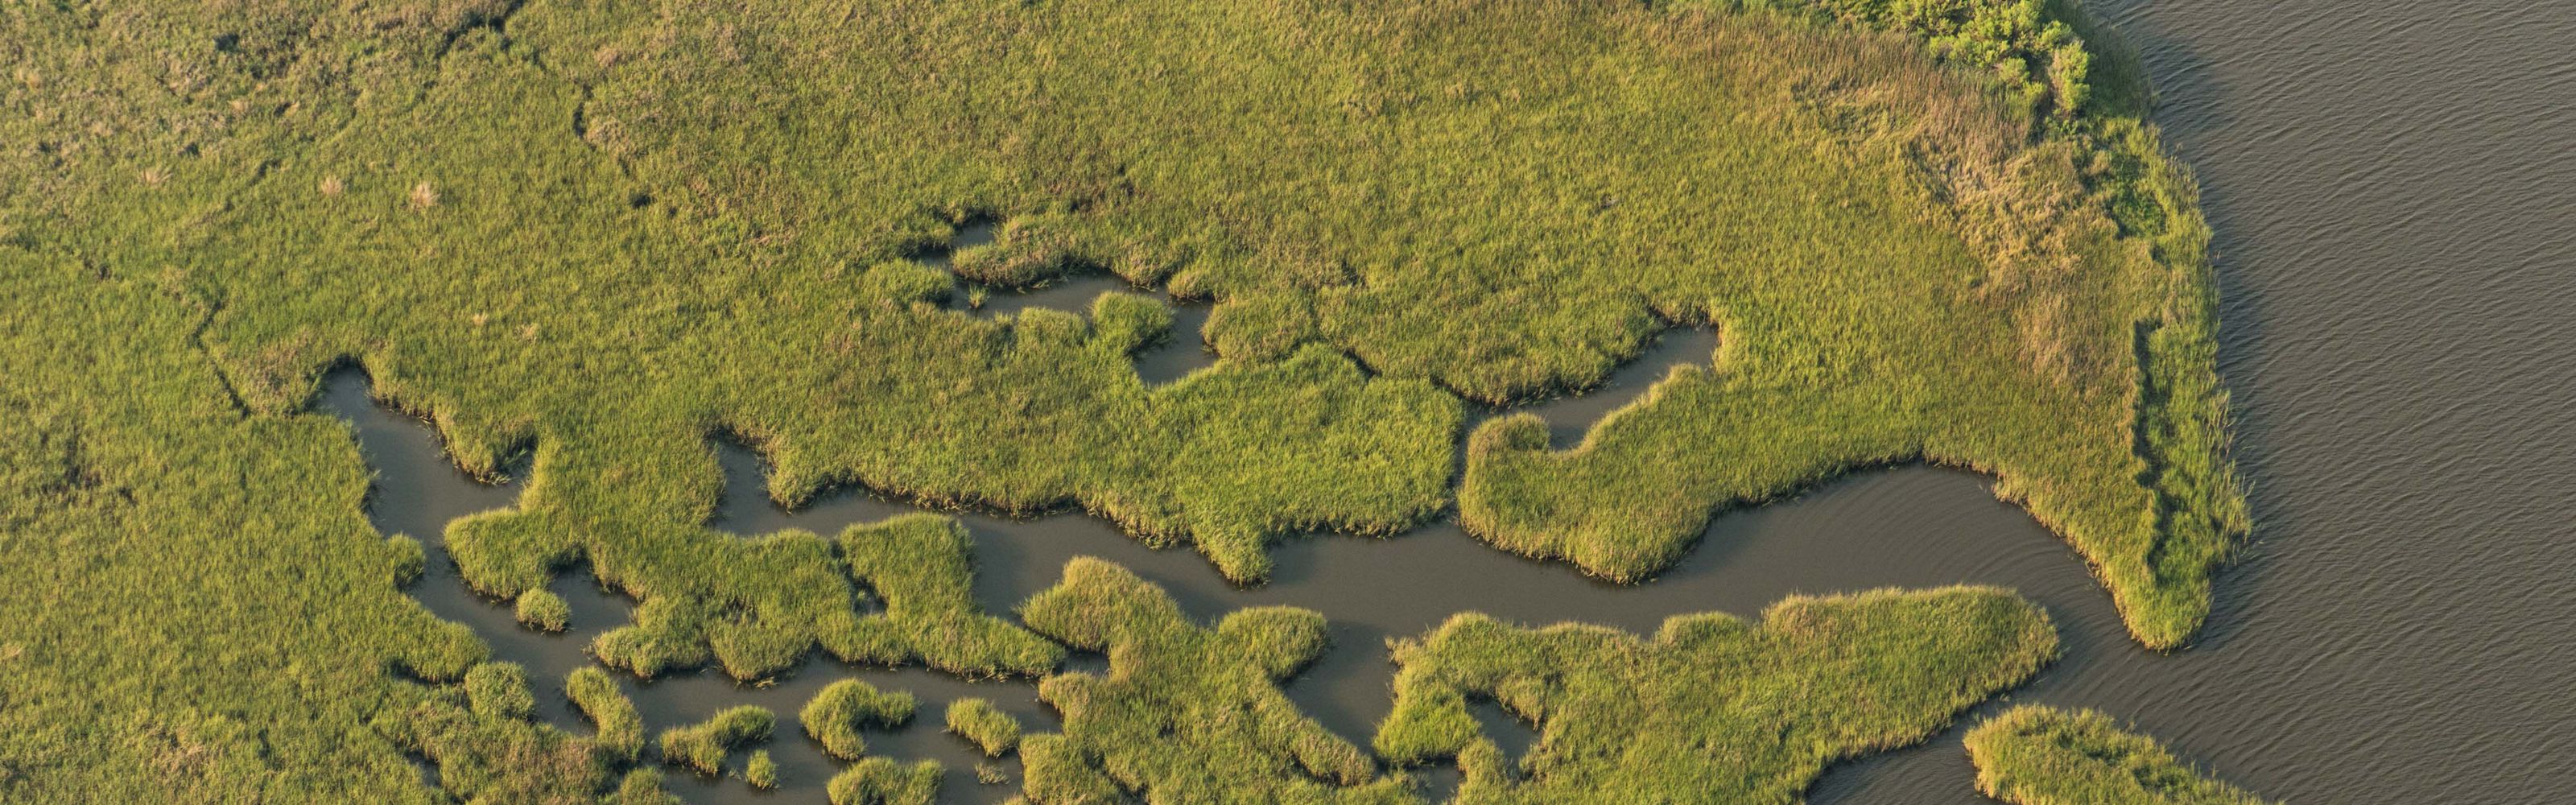 Aerial view of green marshland near Grand Bayou, Louisiana. 